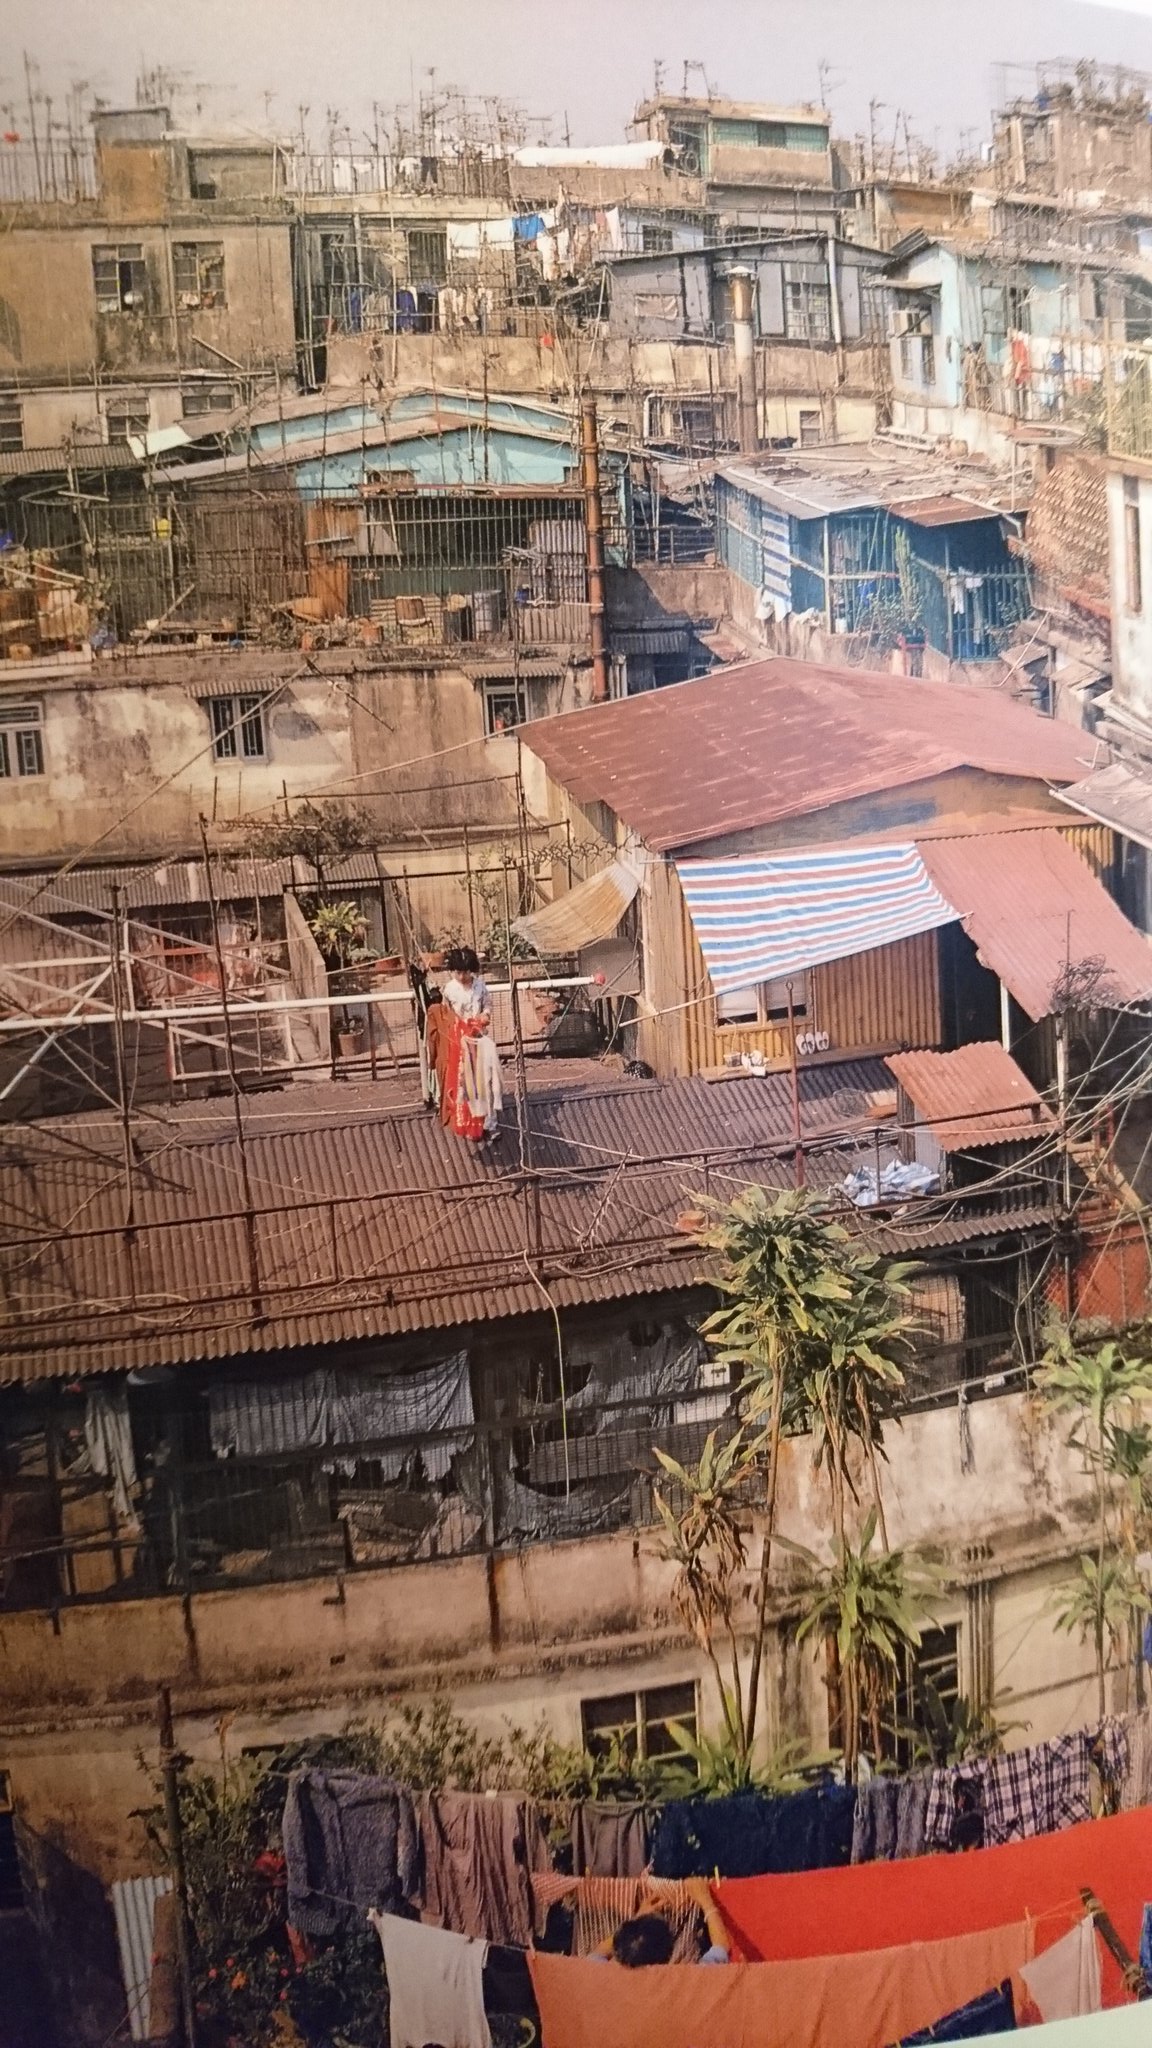 バサラブックス 今は取り壊されてなくなってしまった 香港の巨大スラム 九龍城砦 のことをまとめたドキュメンタリー写真集 City Of Darkness Life In Kowloon Walled City 再版 が入荷しました